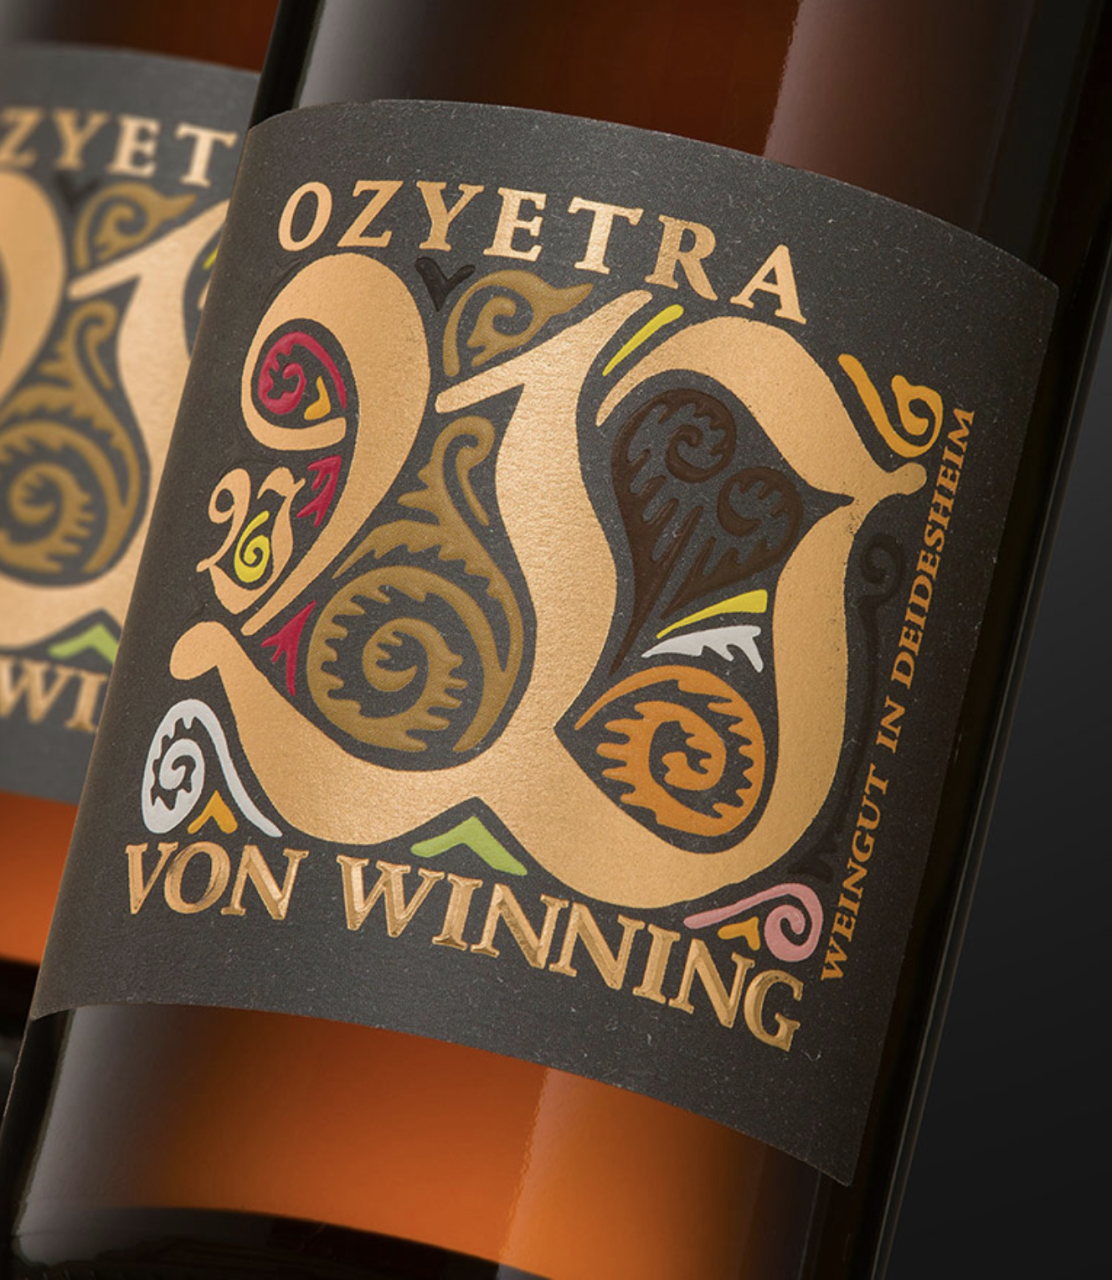 Von Winning Ozyetra Riesling 2021 Deutschland Pfalz Weißwein